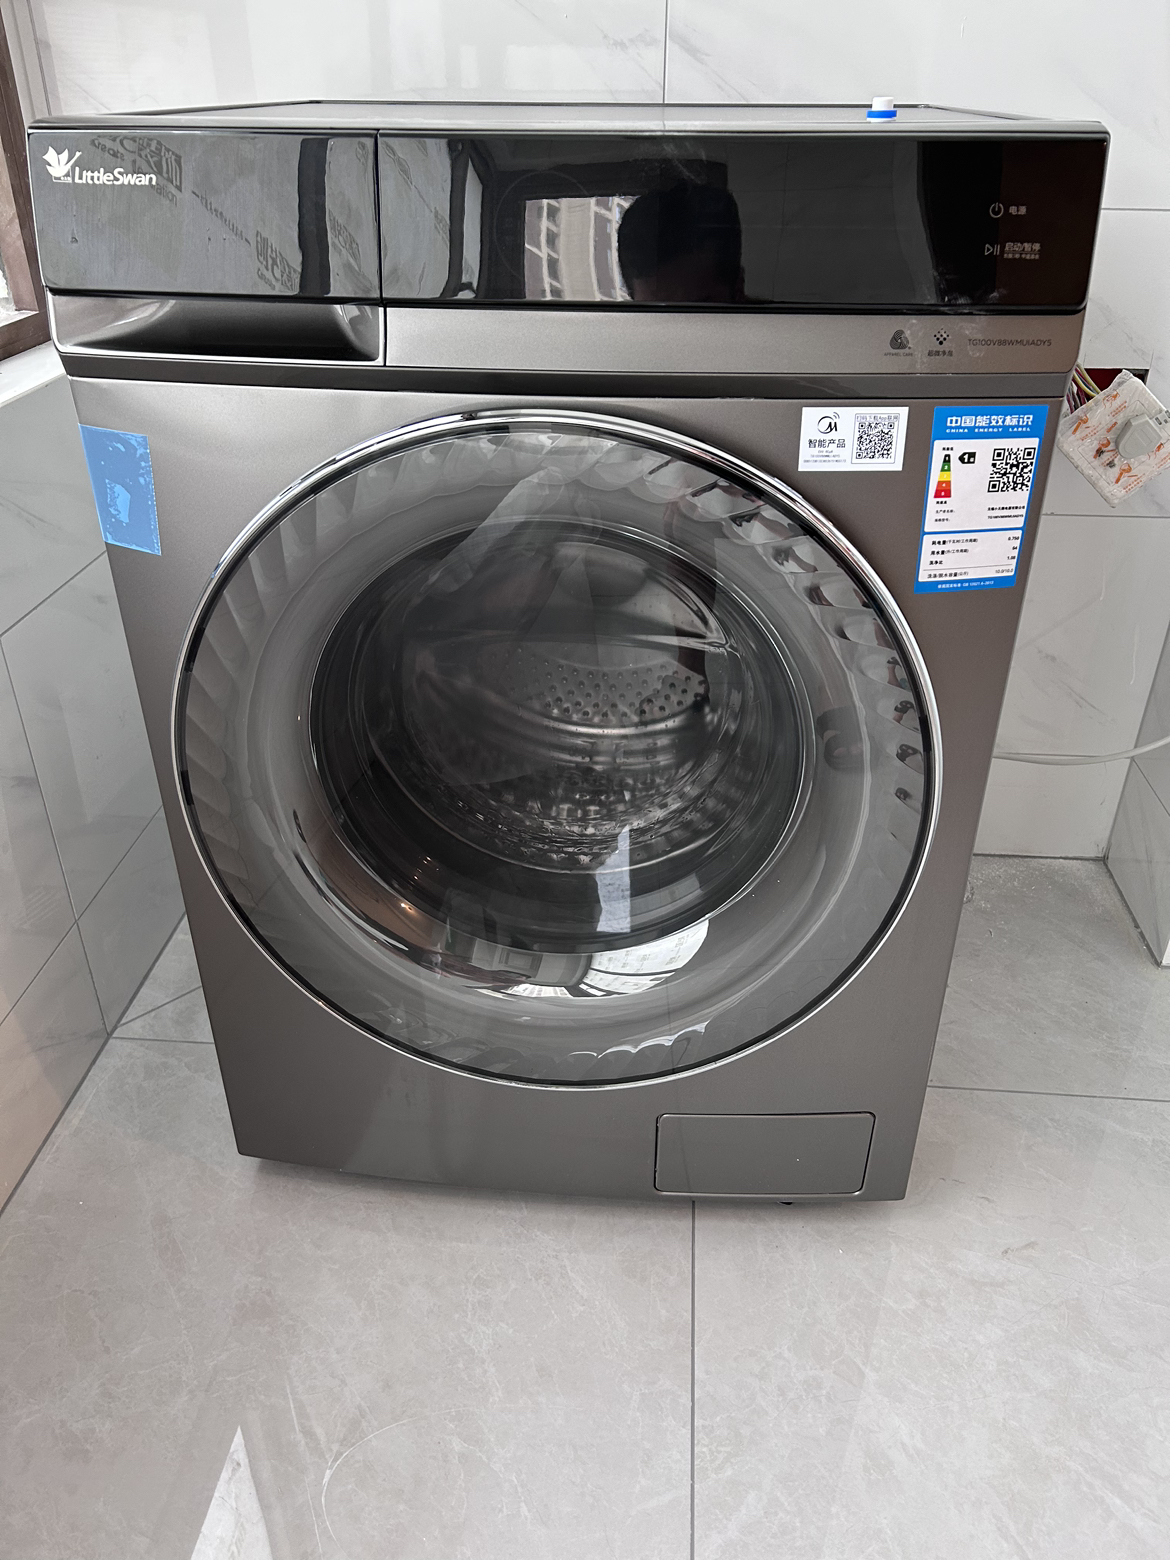 小天鹅(LittleSwan)洗衣机全自动10公斤滚筒 超薄超微净泡水魔方TG100V88WMUIADY5晒单图